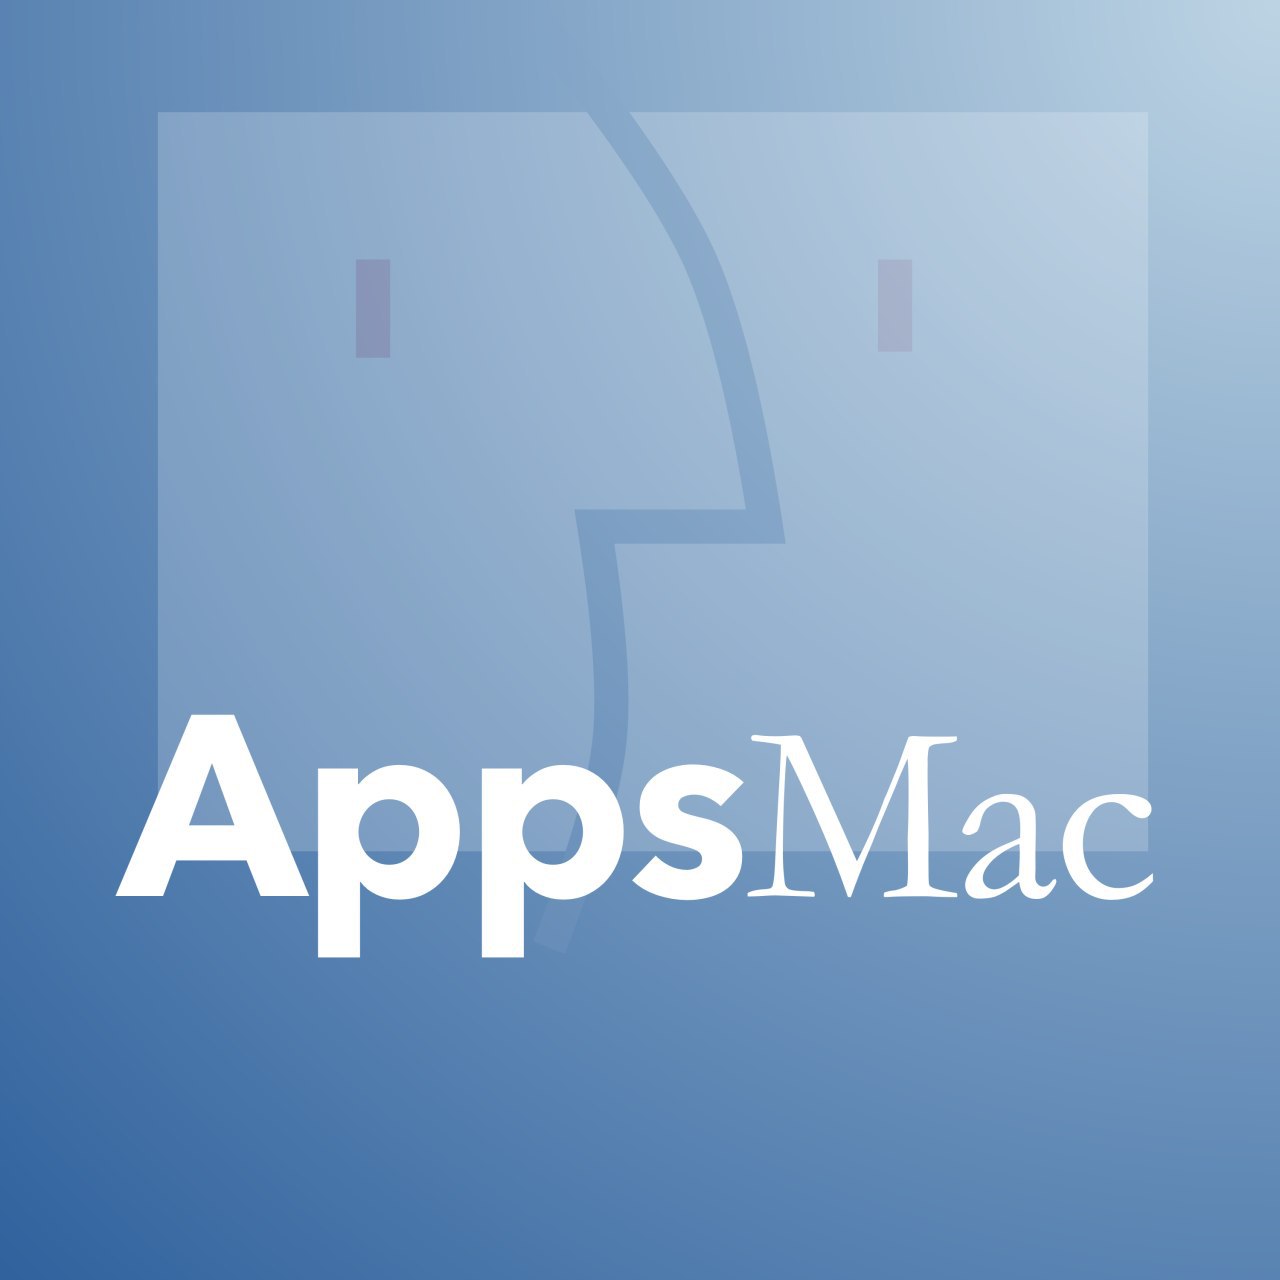 AppsMac El Podcast